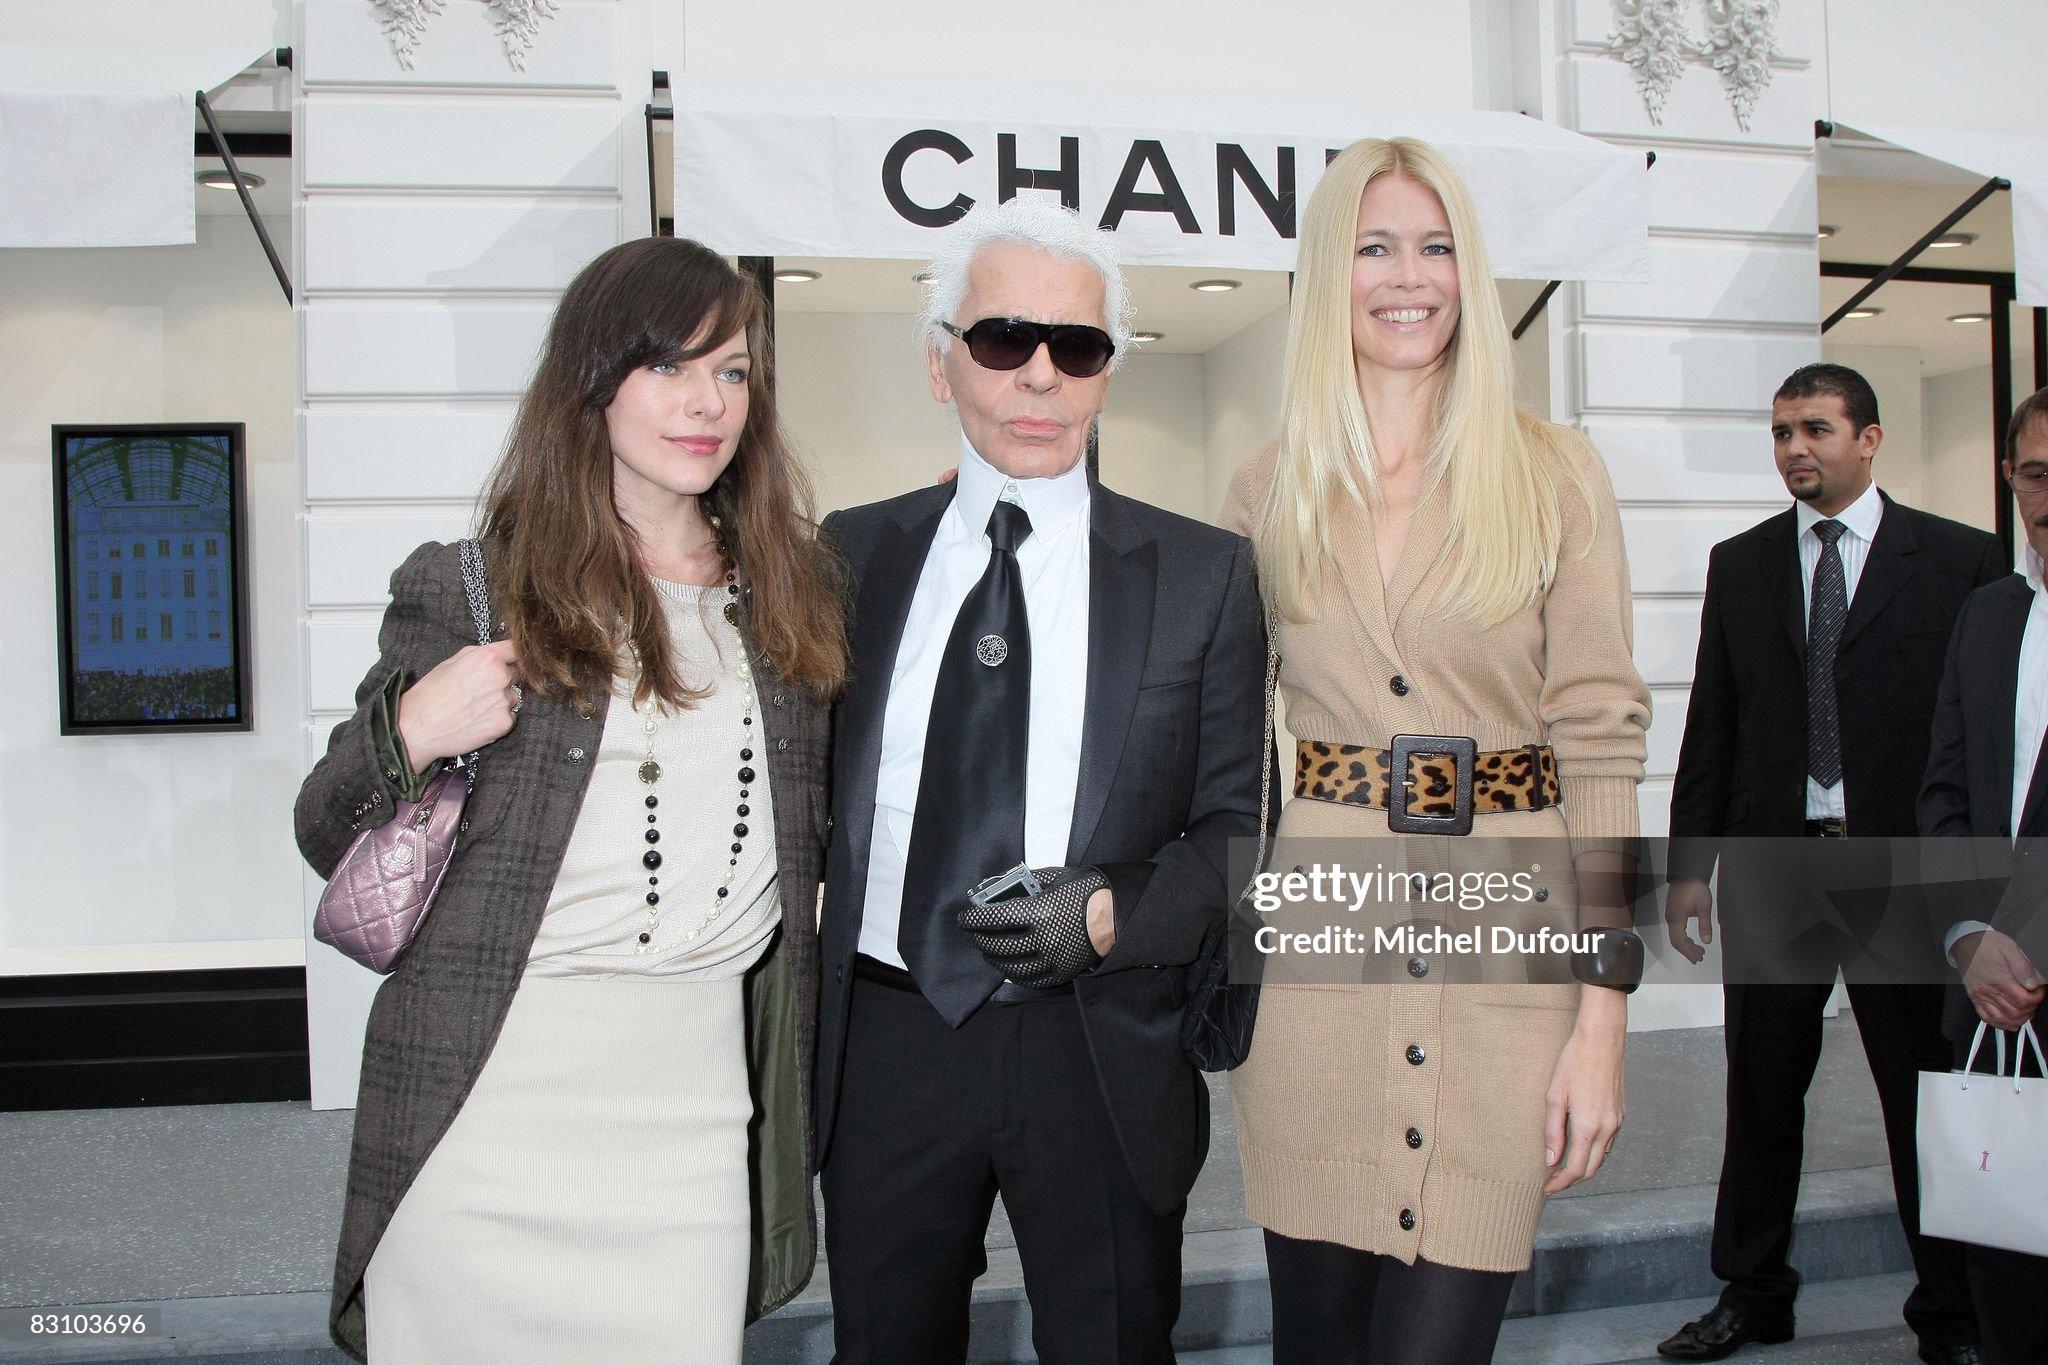 Wie bei Supermodel Claudia Schiffers gesehen!
Chanel camelfarbene Kaschmir-Strickjacke mit CC-Logo-Knöpfen aus der Paris / LONDON Collection, metiers d'Art
Größenbezeichnung 36 FR. Ungetragen aufbewahrt.